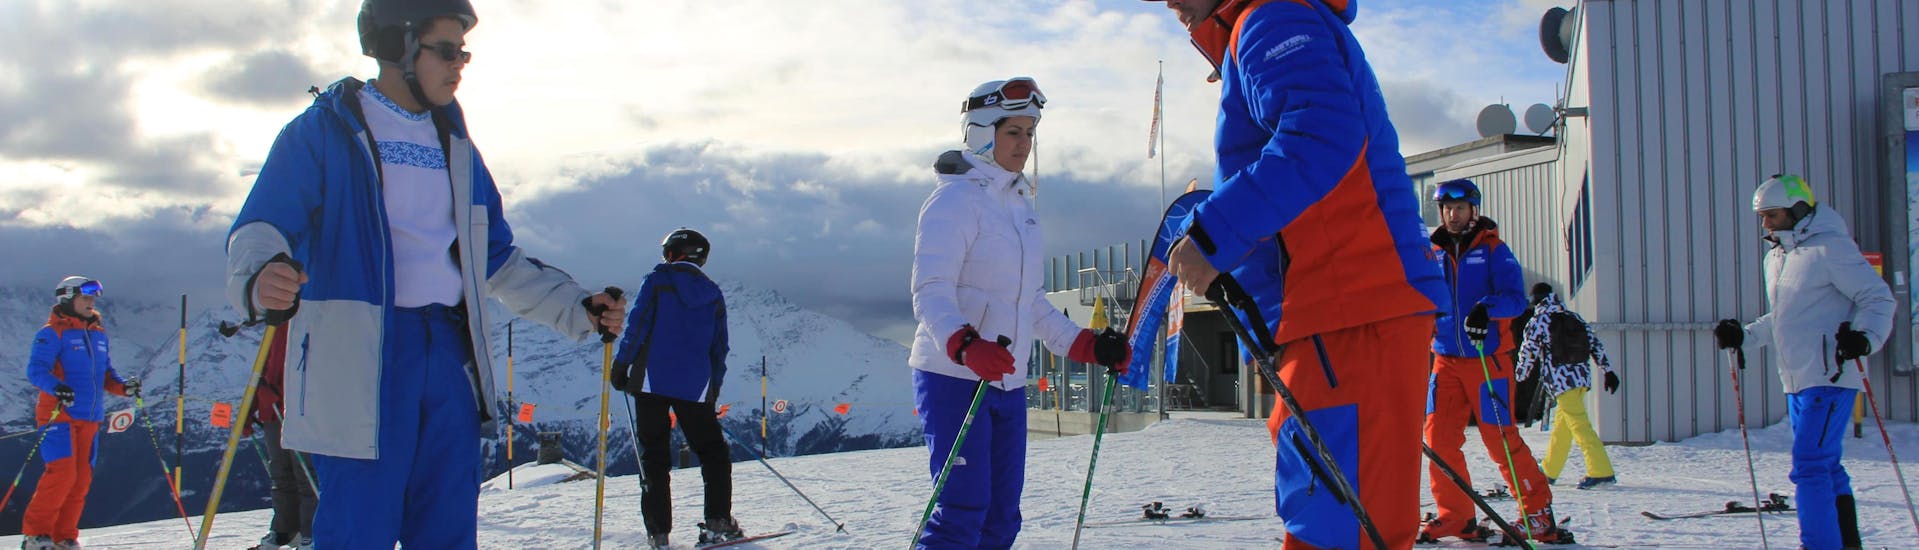 Cours de ski Ados & Adultes pour Tous niveaux avec Ecole de Ski Tzoum'Évasion La Tzoumaz.